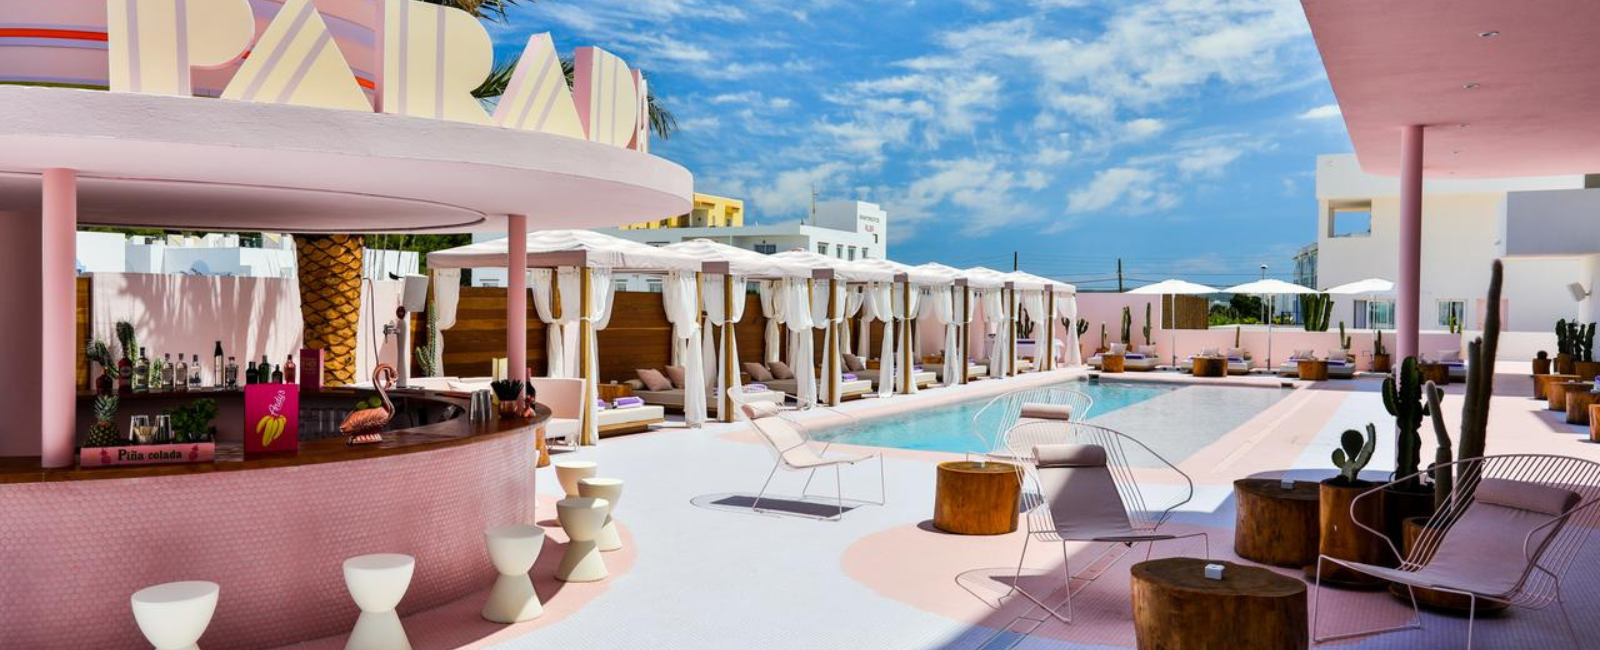 Paradiso Ibiza Art Hotel, Spain